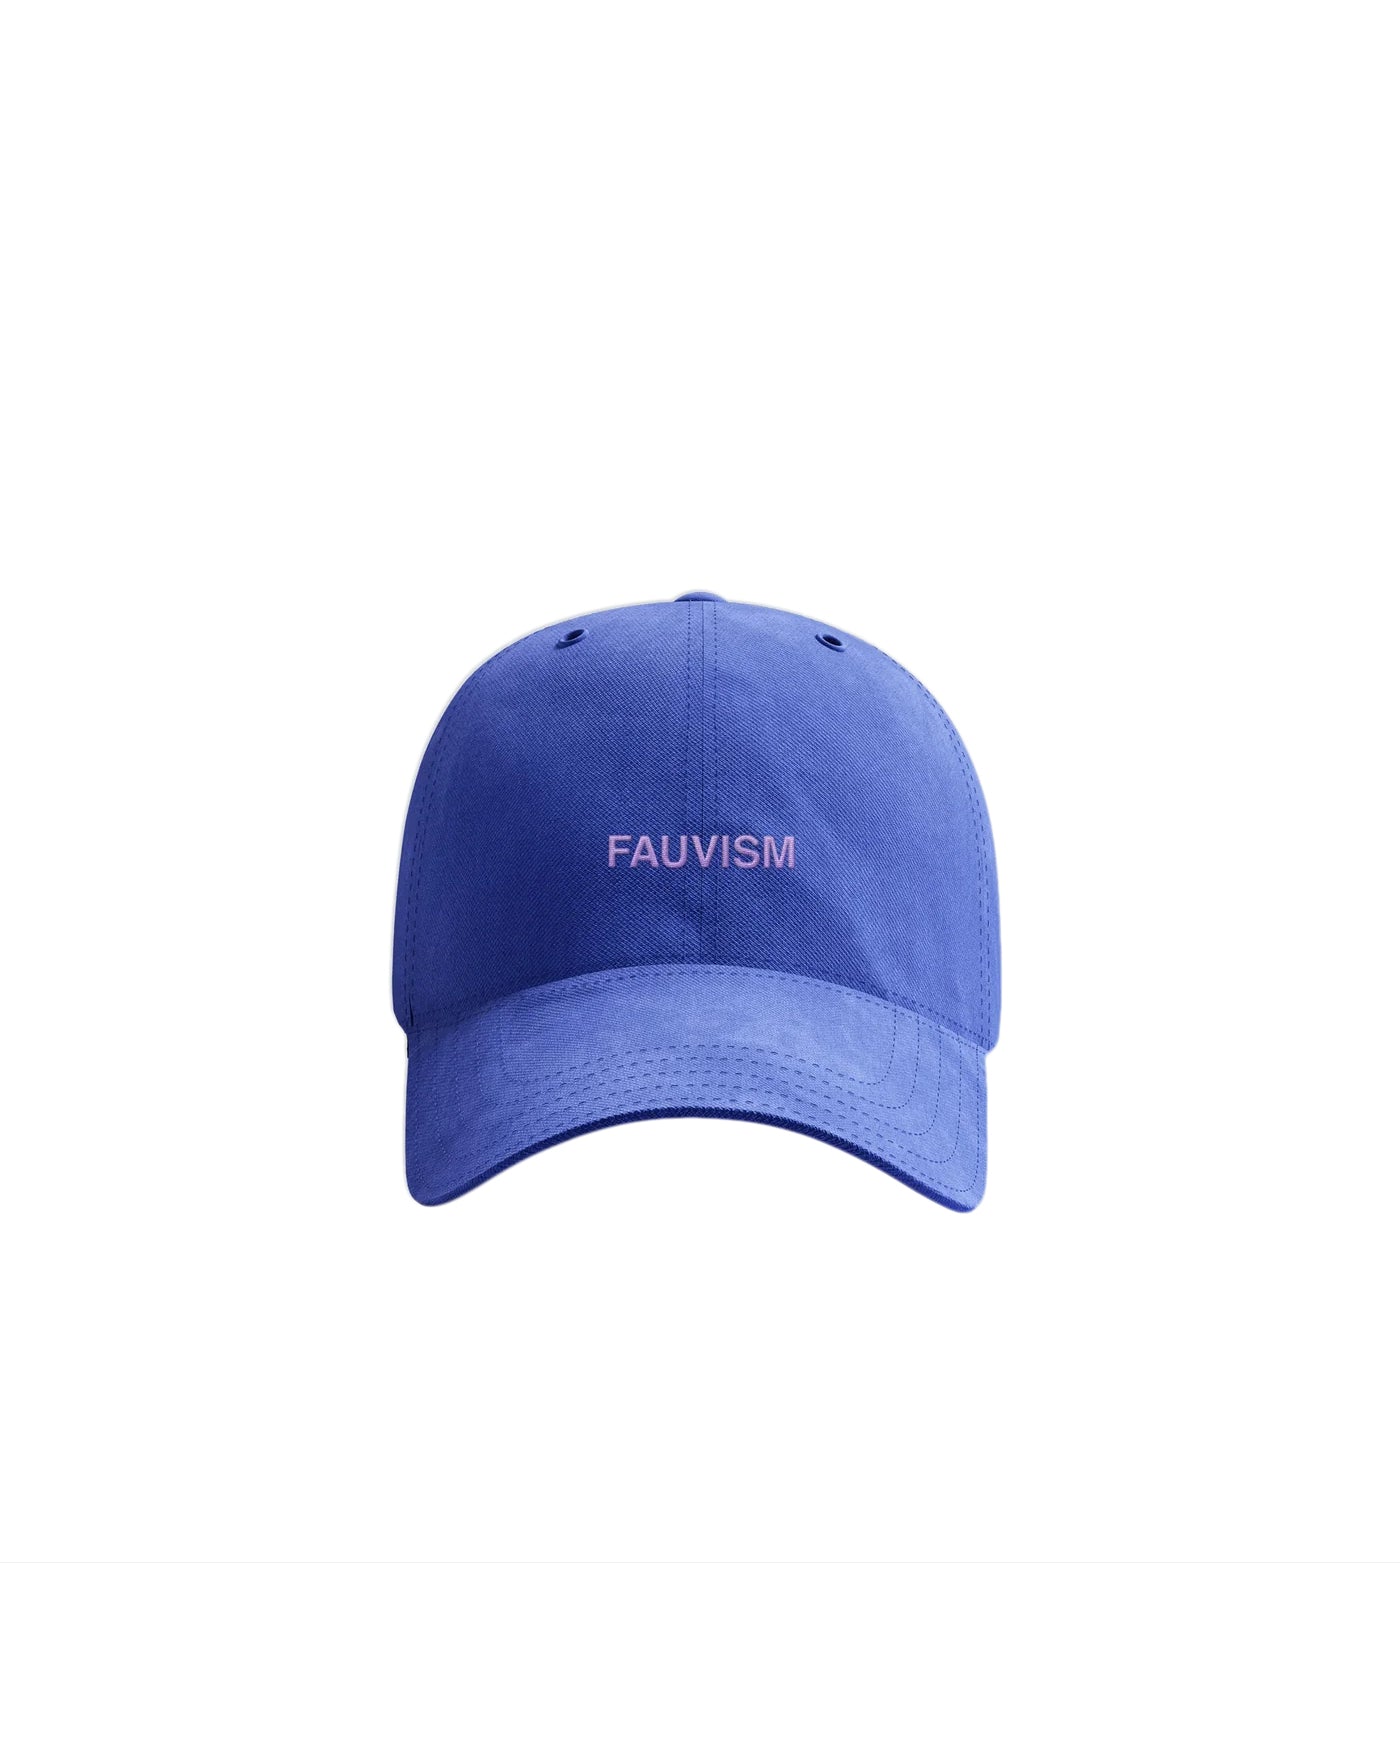 フォービズムのお父さんの帽子